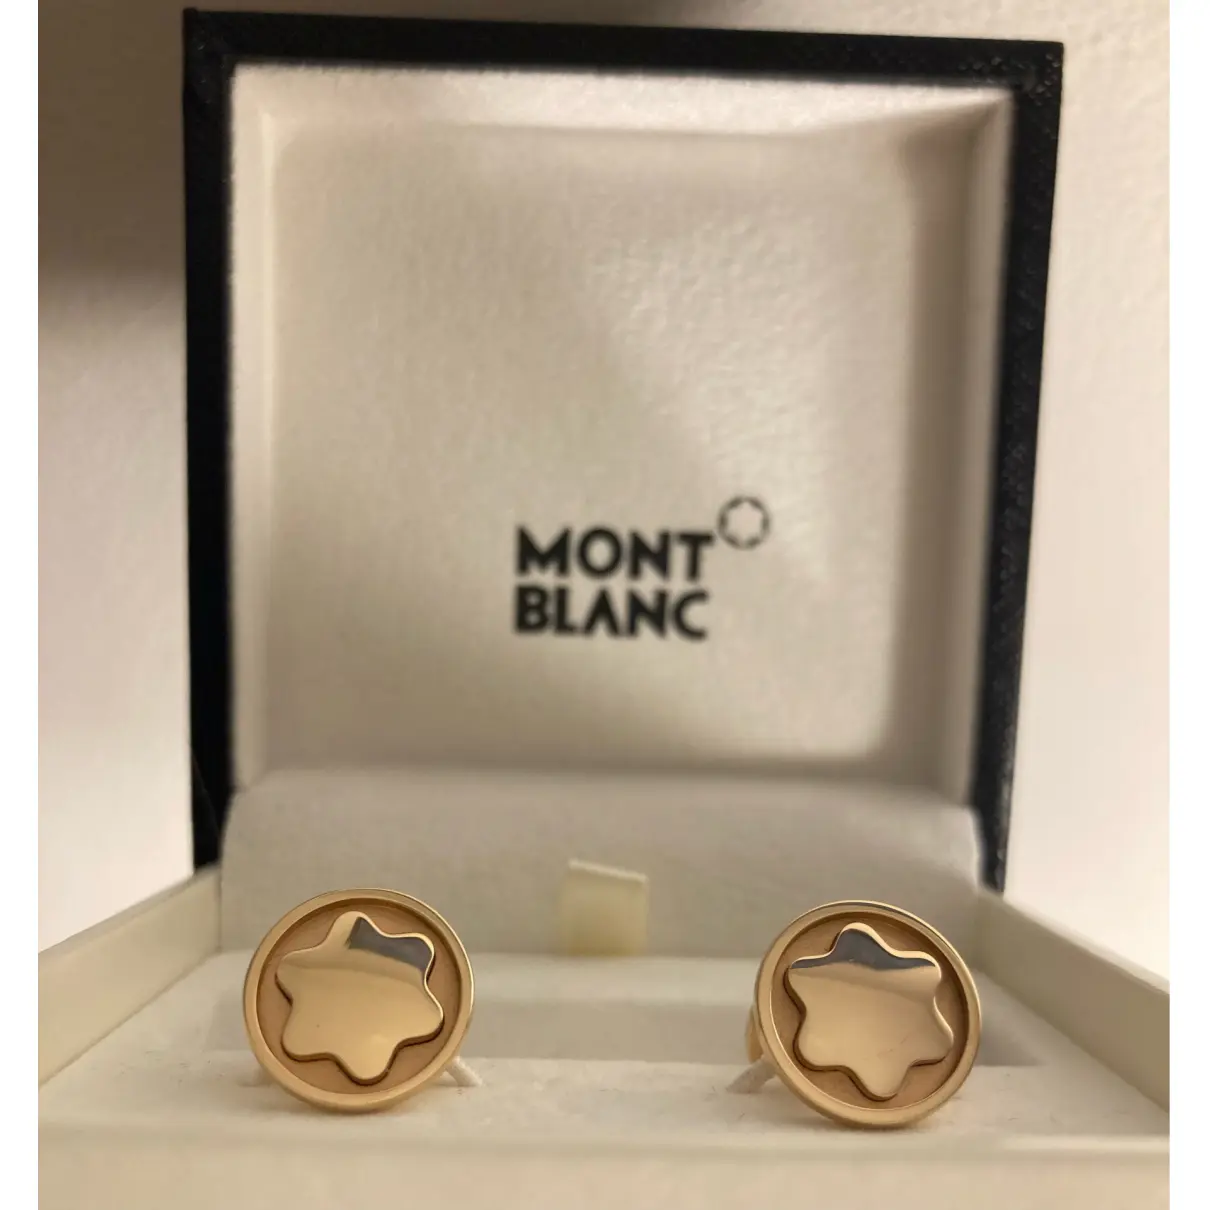 Buy Montblanc Gold cufflinks online